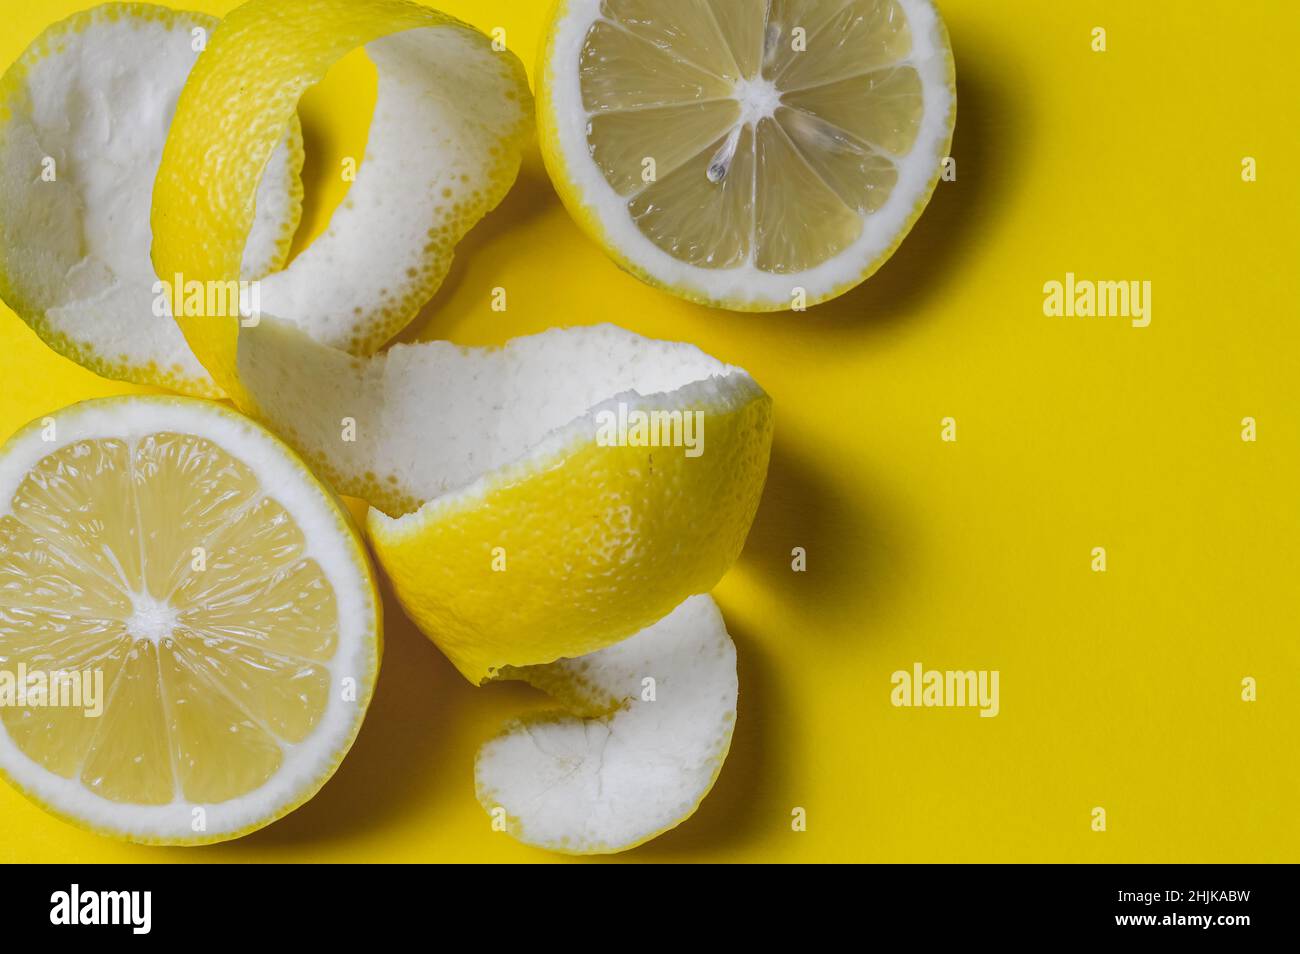 Fröhlicher Hintergrund von halbierten Zitronen und spiralförmigen Zitronenschalen auf einem gelben Papierhintergrund mit viel Platz für etwas Text Stockfoto